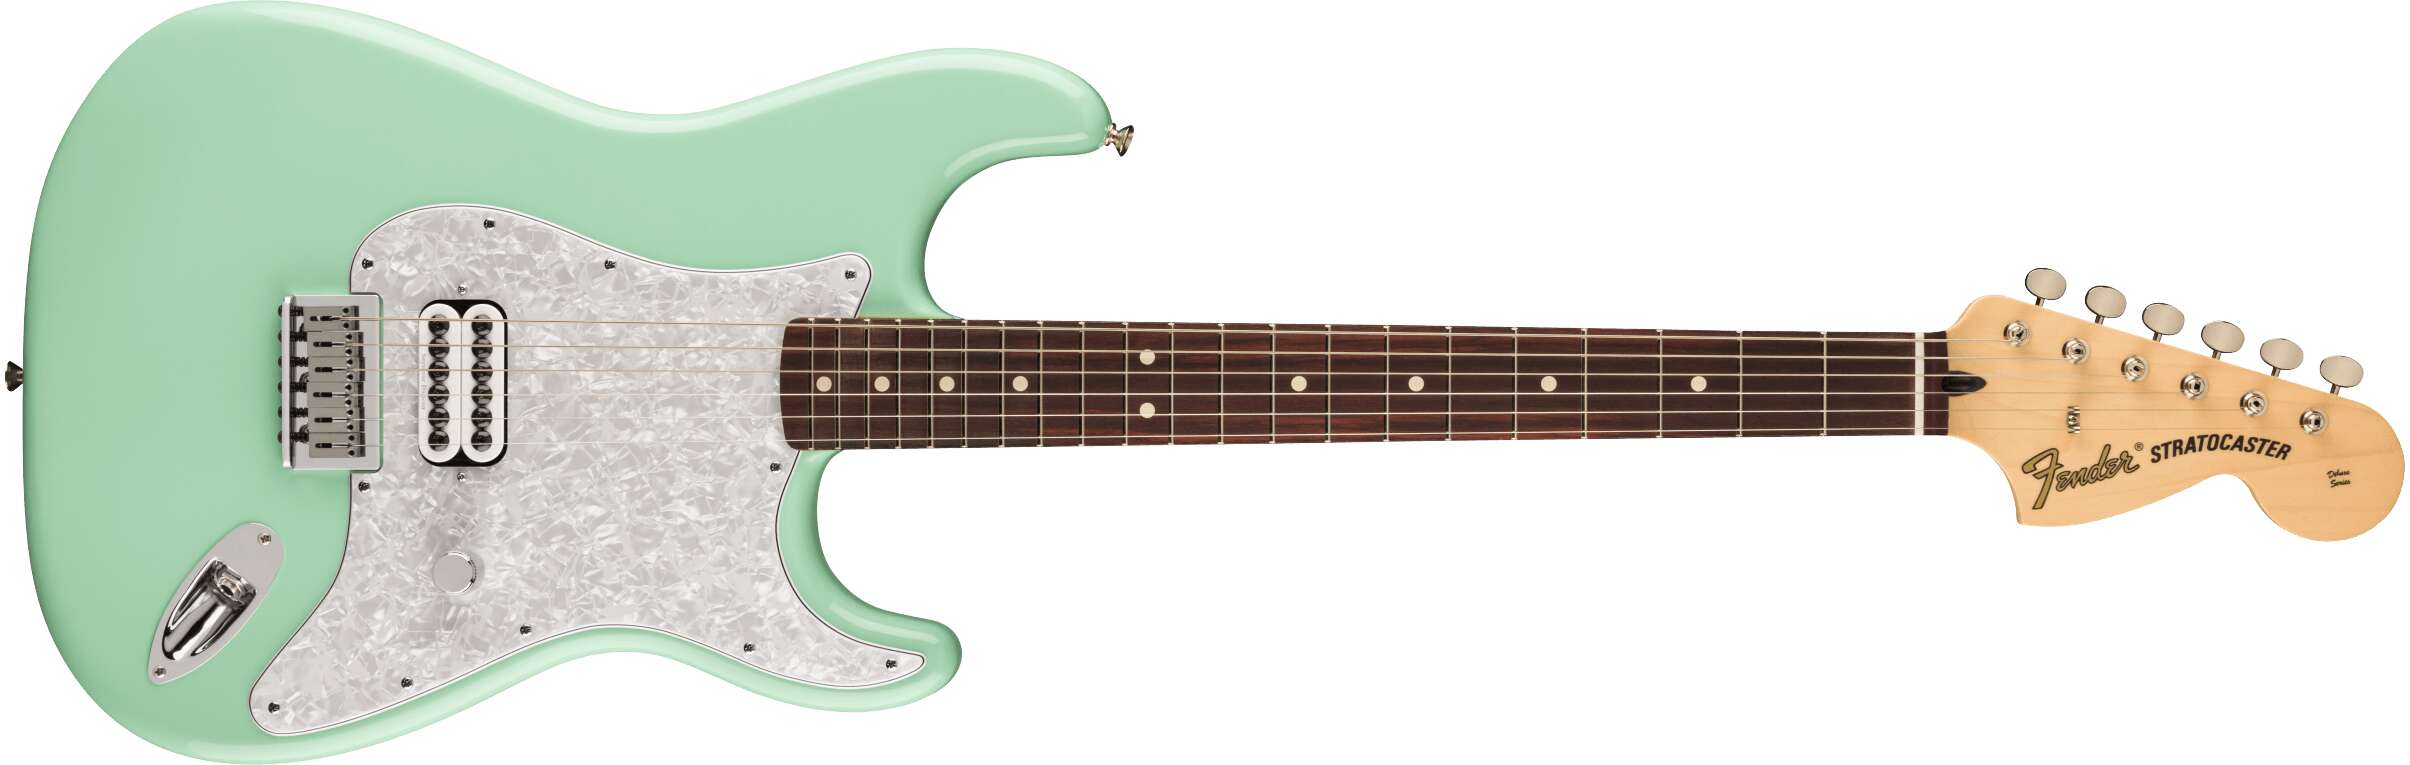 Tom Delonge Fender Stratocaster